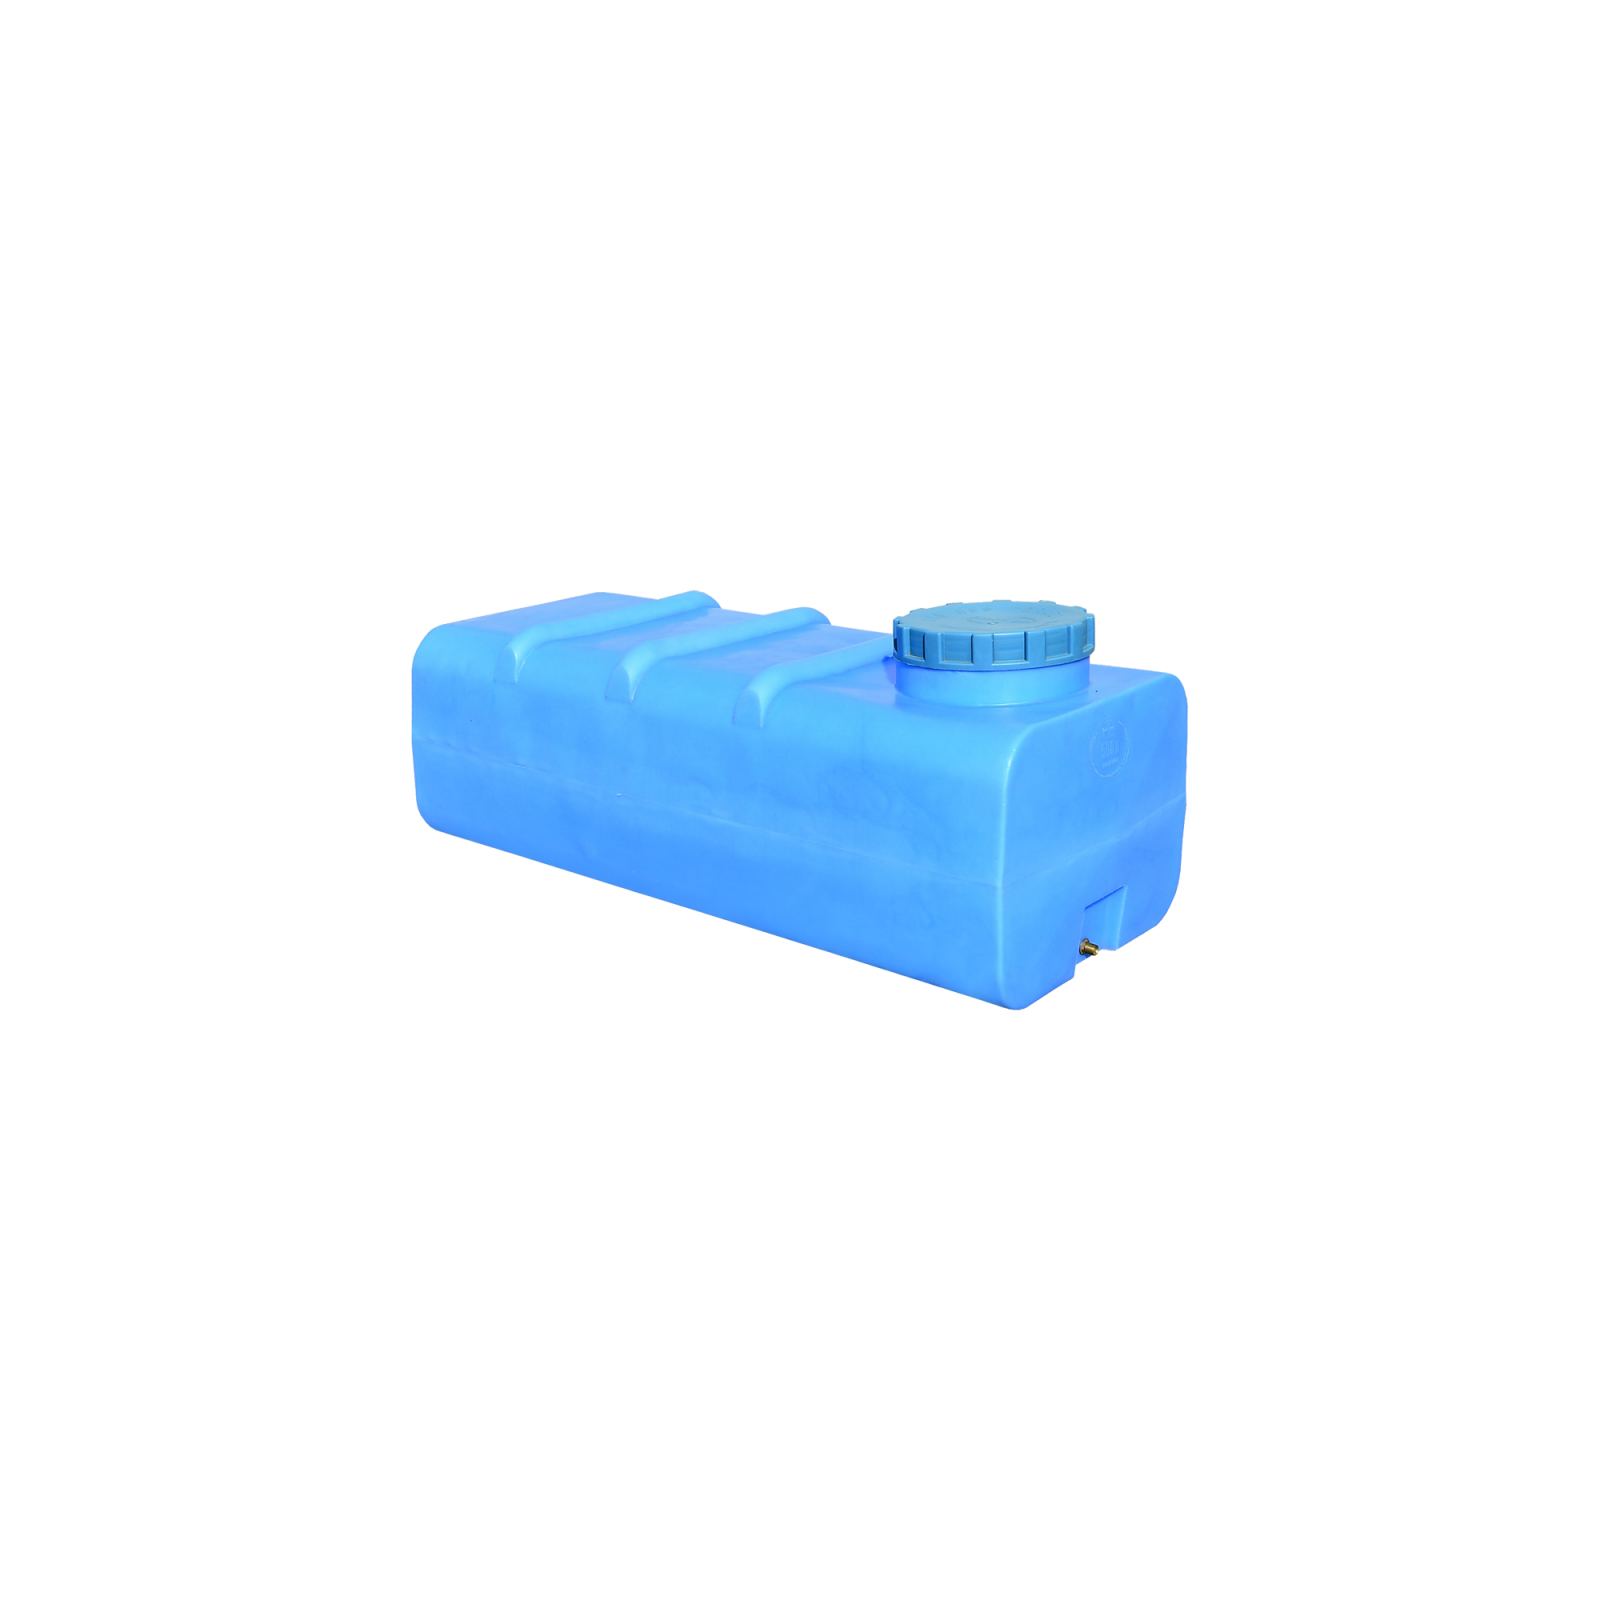 Емкость для воды Пласт Бак квадратная пищевая 500 л прямоугольная синяя (12457)